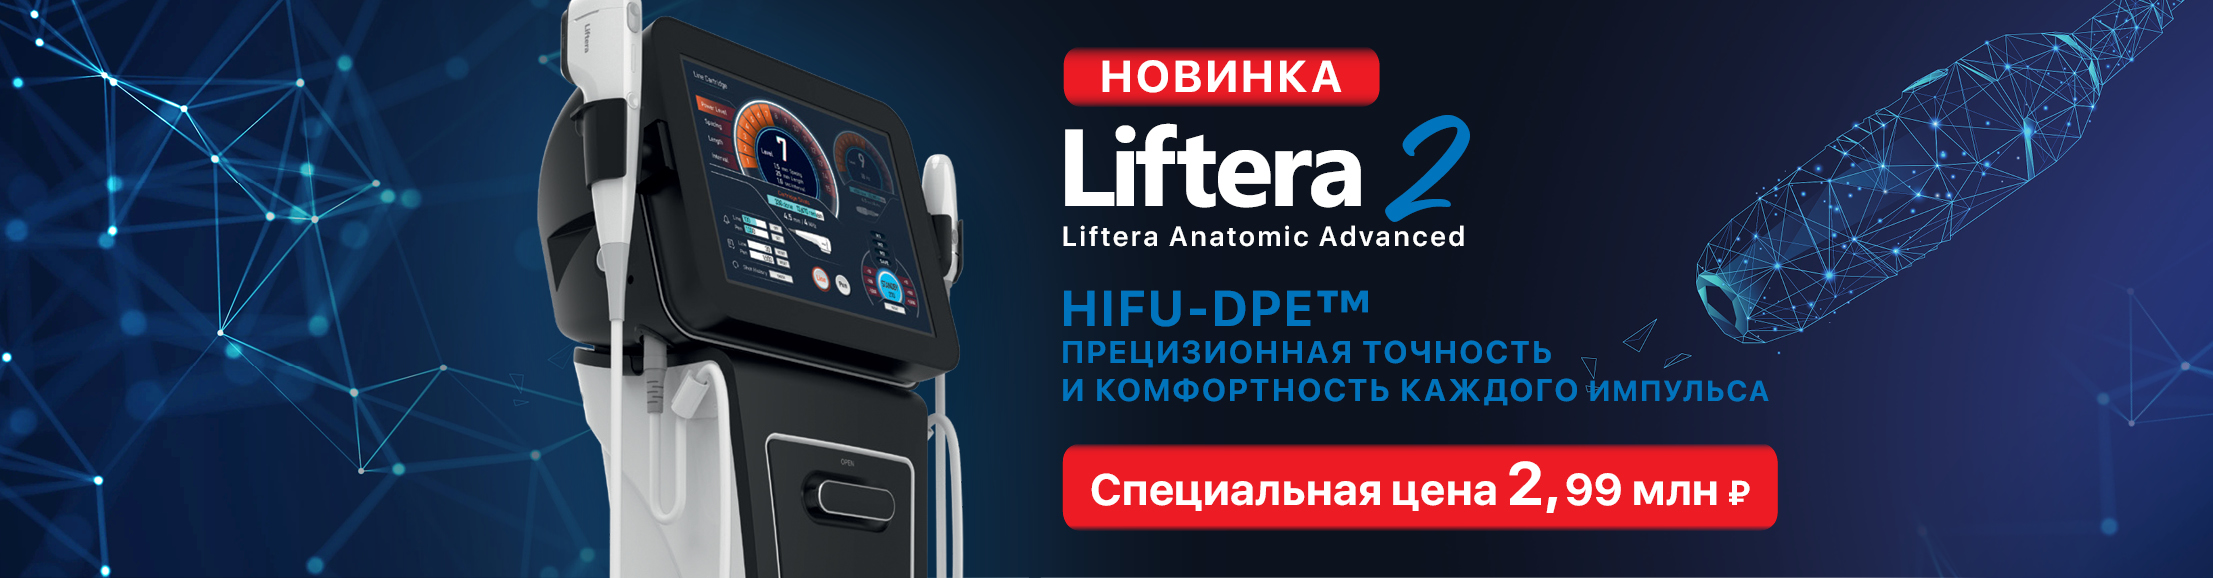 Аппарат Liftera2 по специальной цене